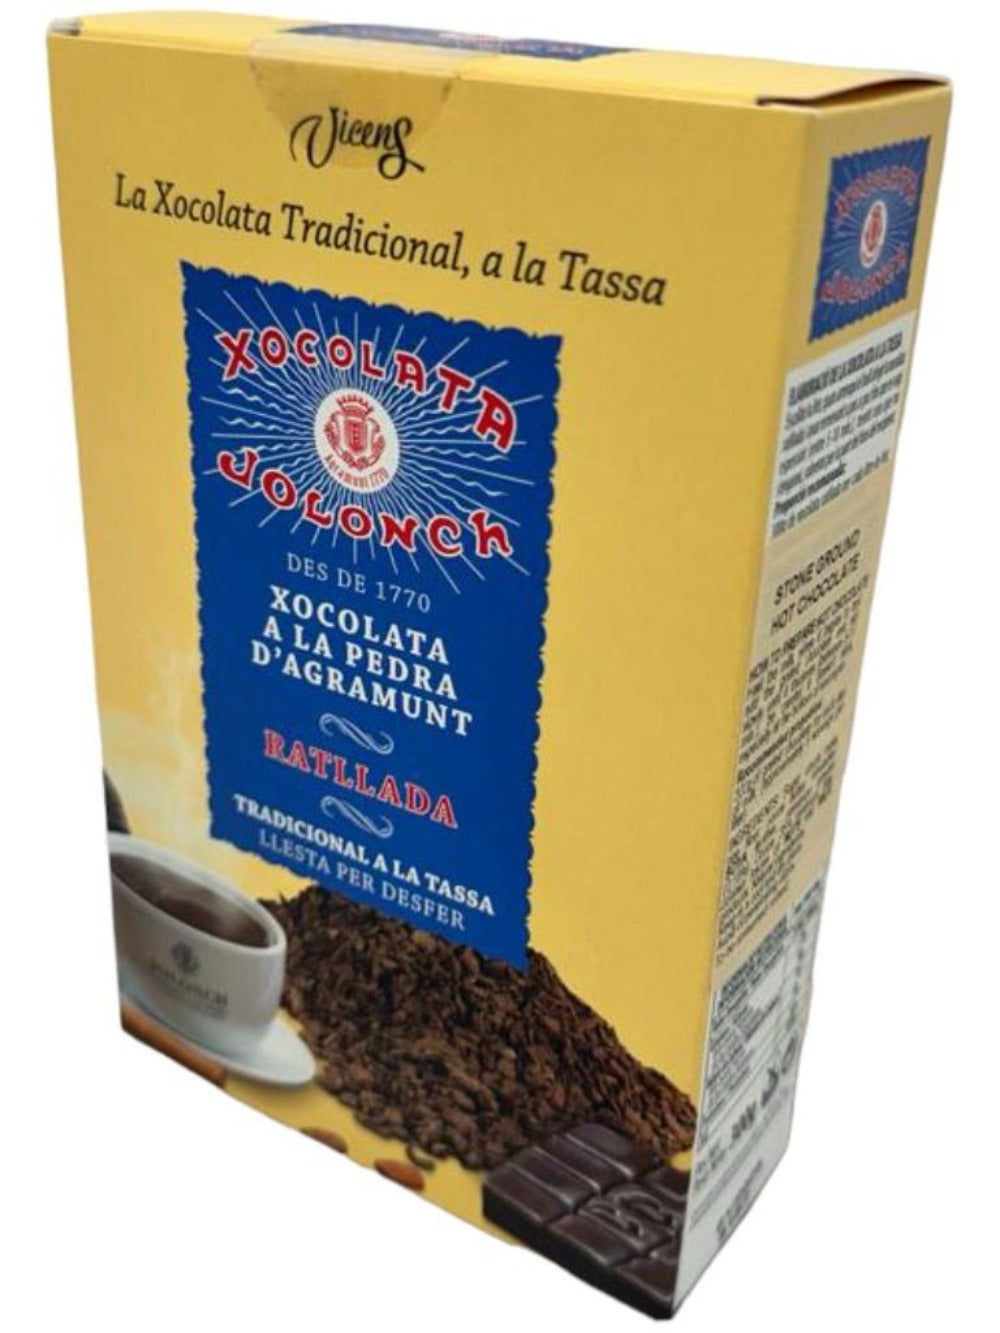 Vicens Xocolata Jolonch Coxolate A La Pedra A La Tazza Stone Ground Hot Chocolate 300g